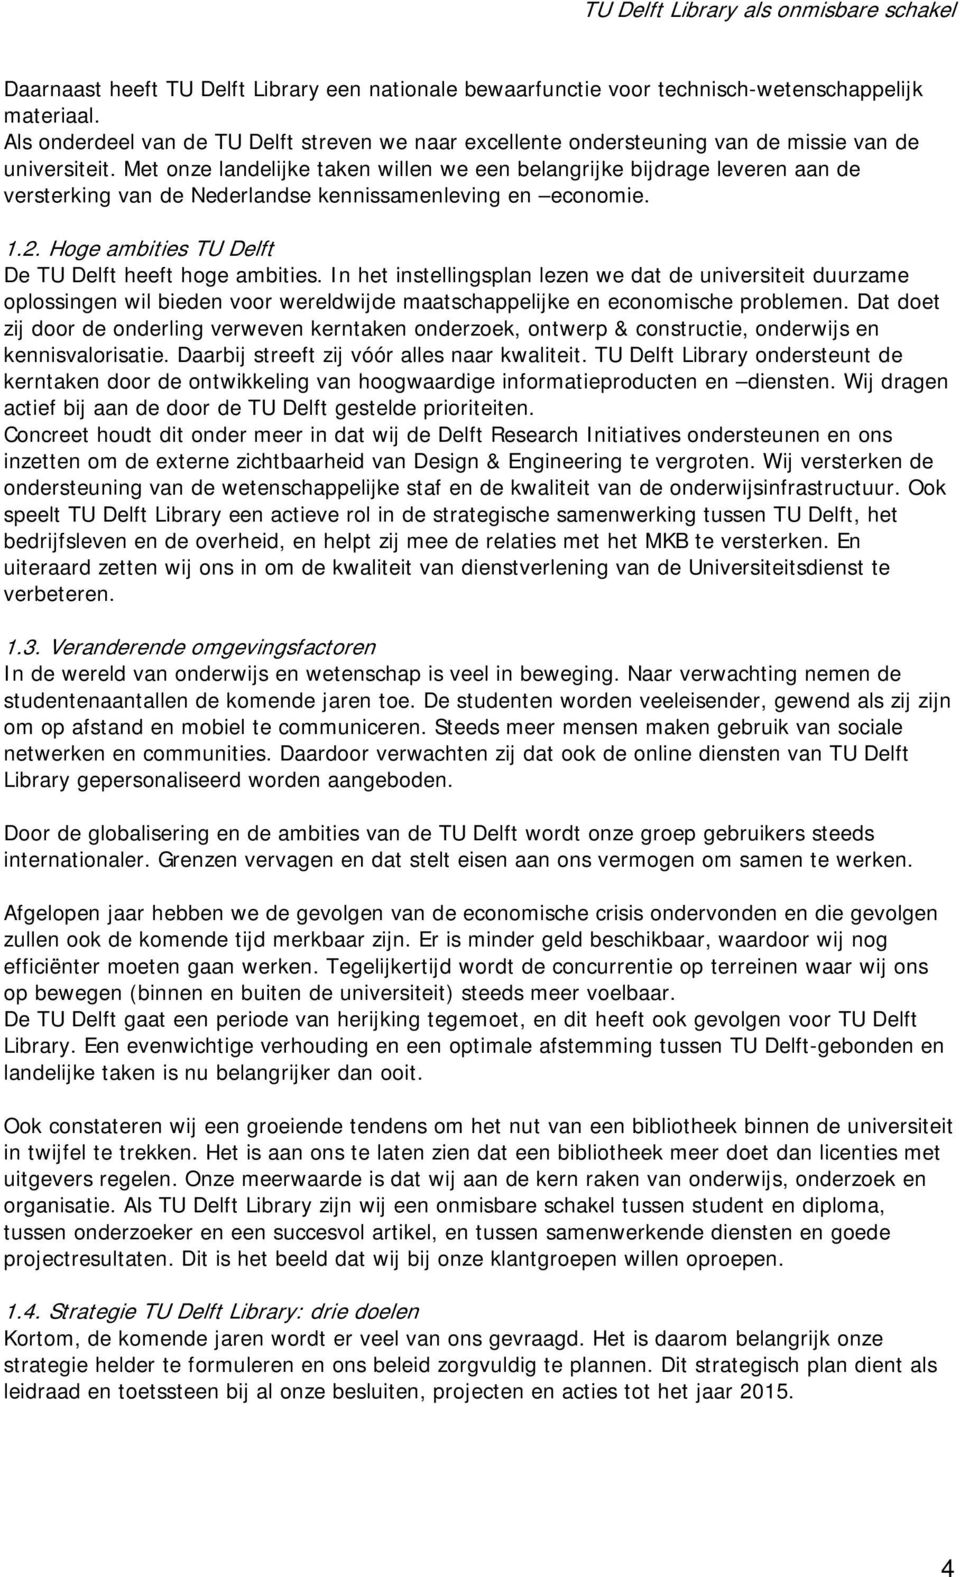 Met onze landelijke taken willen we een belangrijke bijdrage leveren aan de versterking van de Nederlandse kennissamenleving en economie. 1.2. Hoge ambities TU Delft De TU Delft heeft hoge ambities.